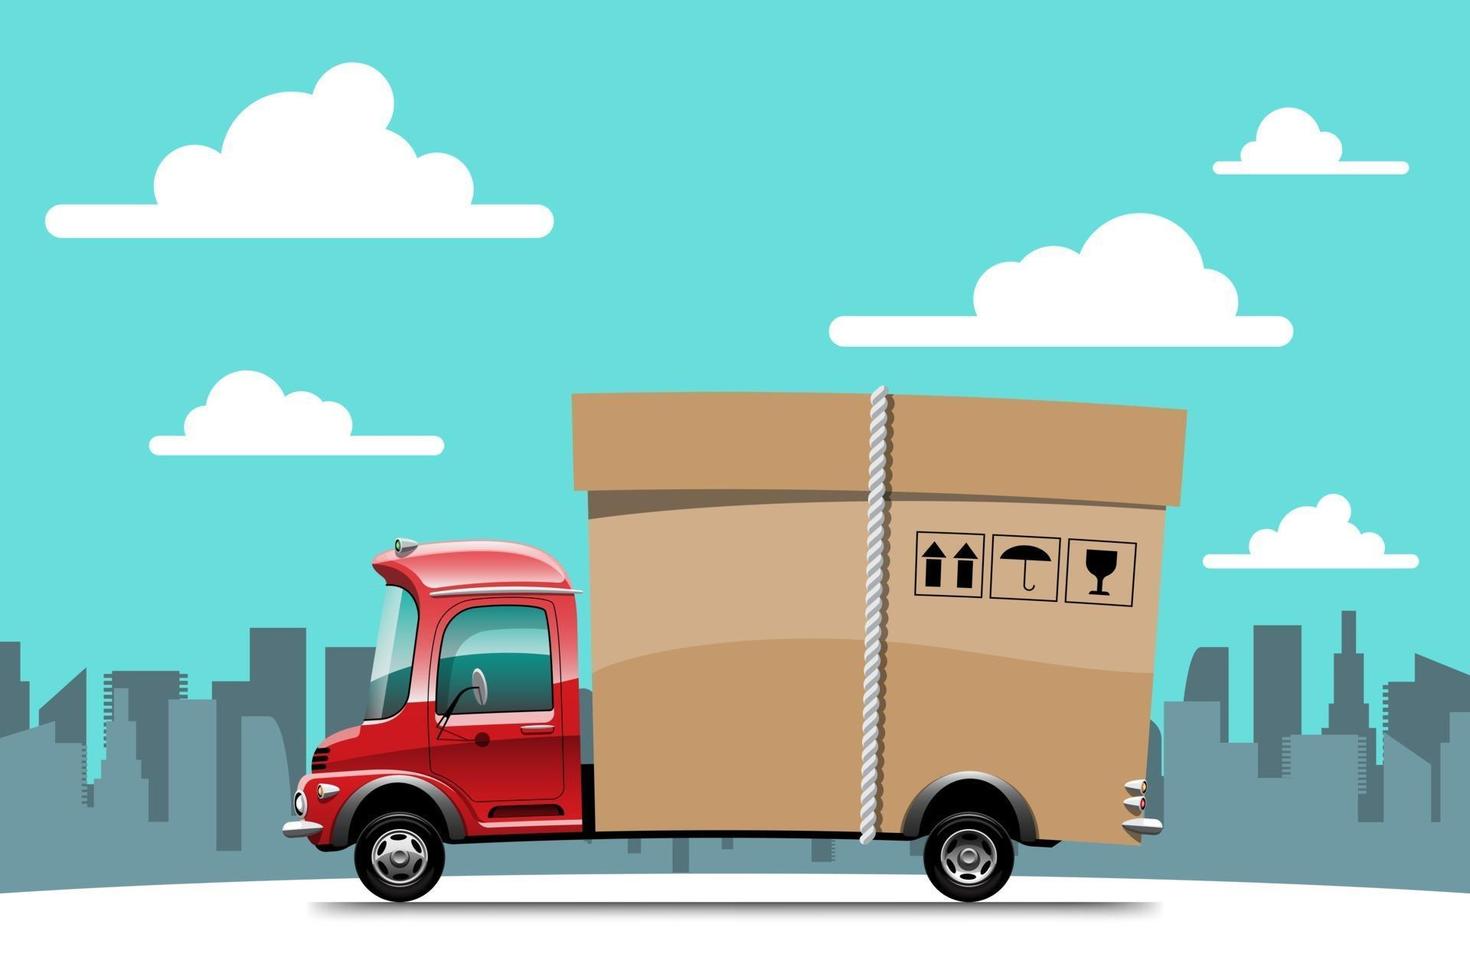 Grandes iconos vectoriales de vehículos de entrega aislados, ilustraciones planas de camiones, concepto de transporte comercial logístico. vector